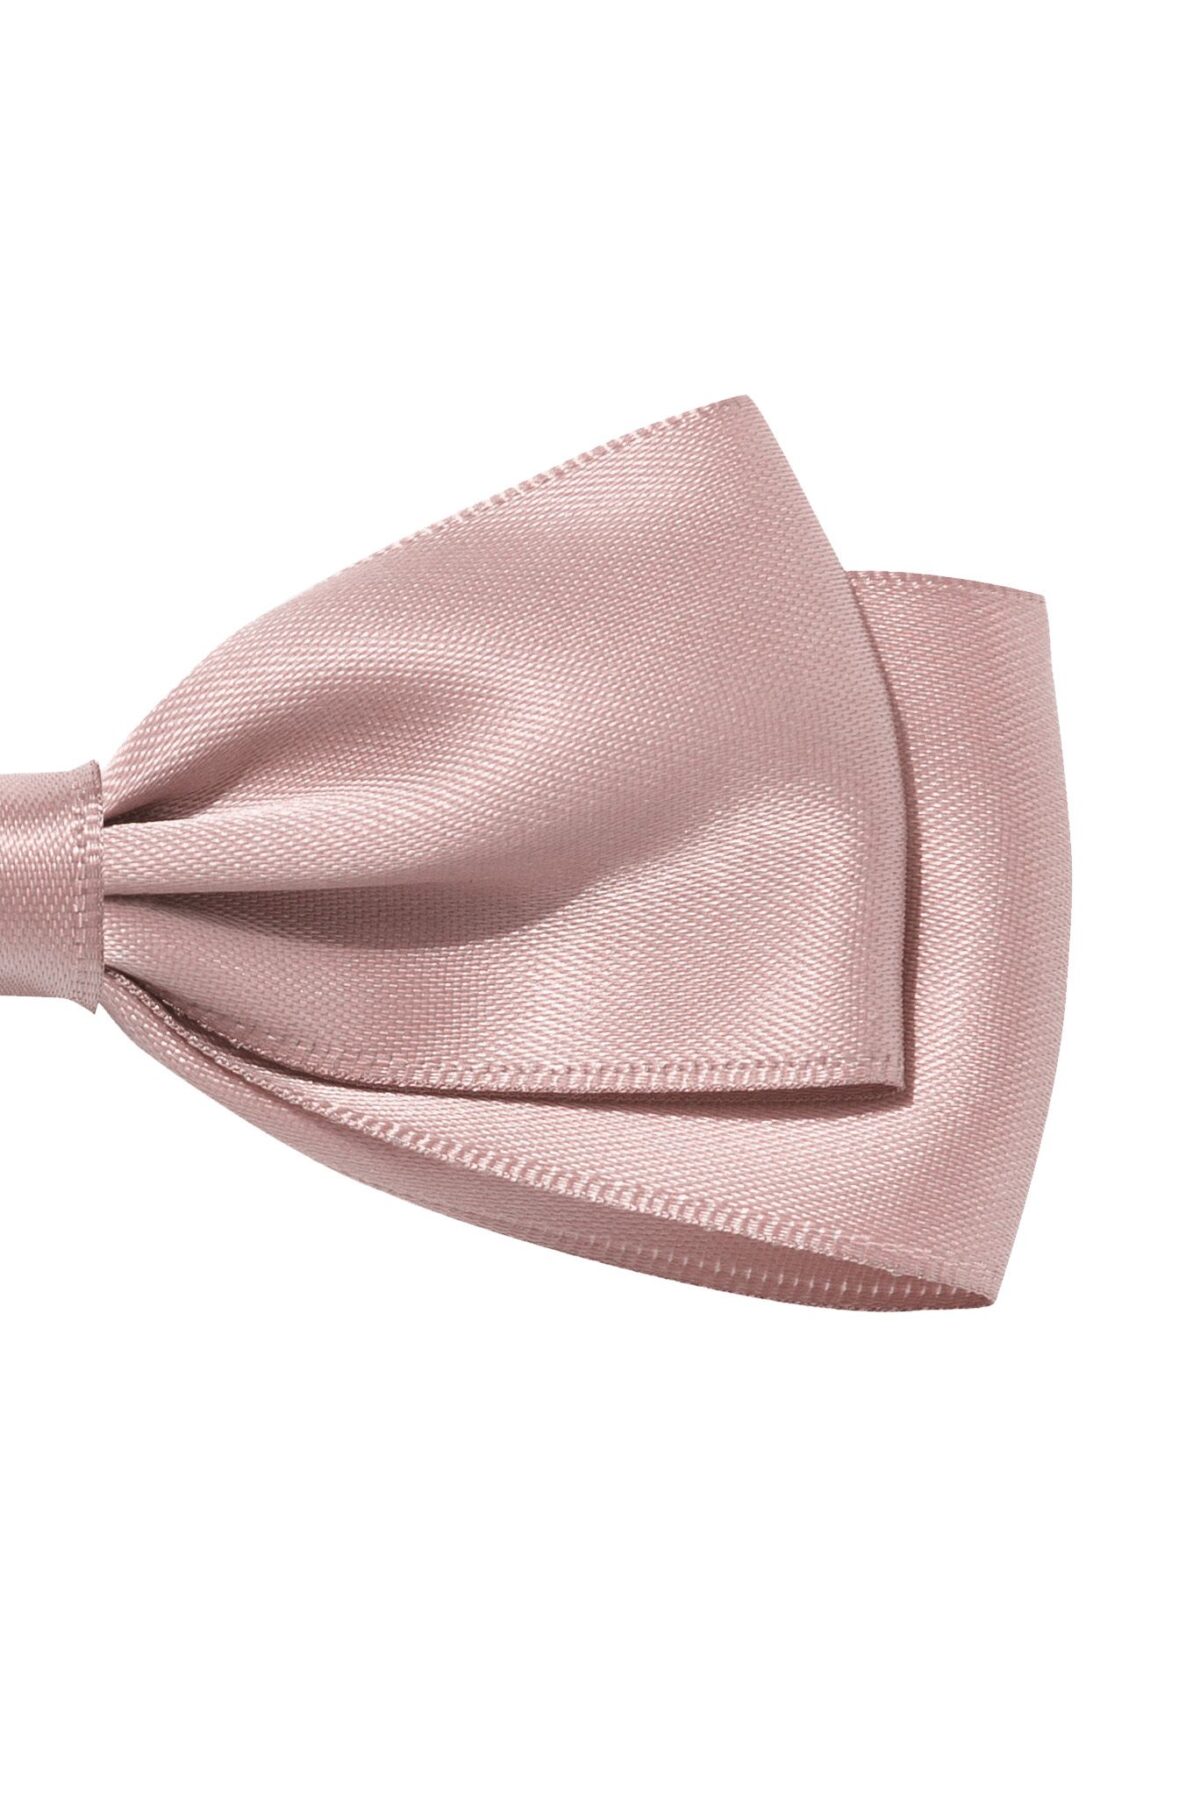 Fig&Amp;Pear - Spinka Do Włosów Handmade Z Różową Kokardą Misty Rose Dla Dziewczynki - Różowy